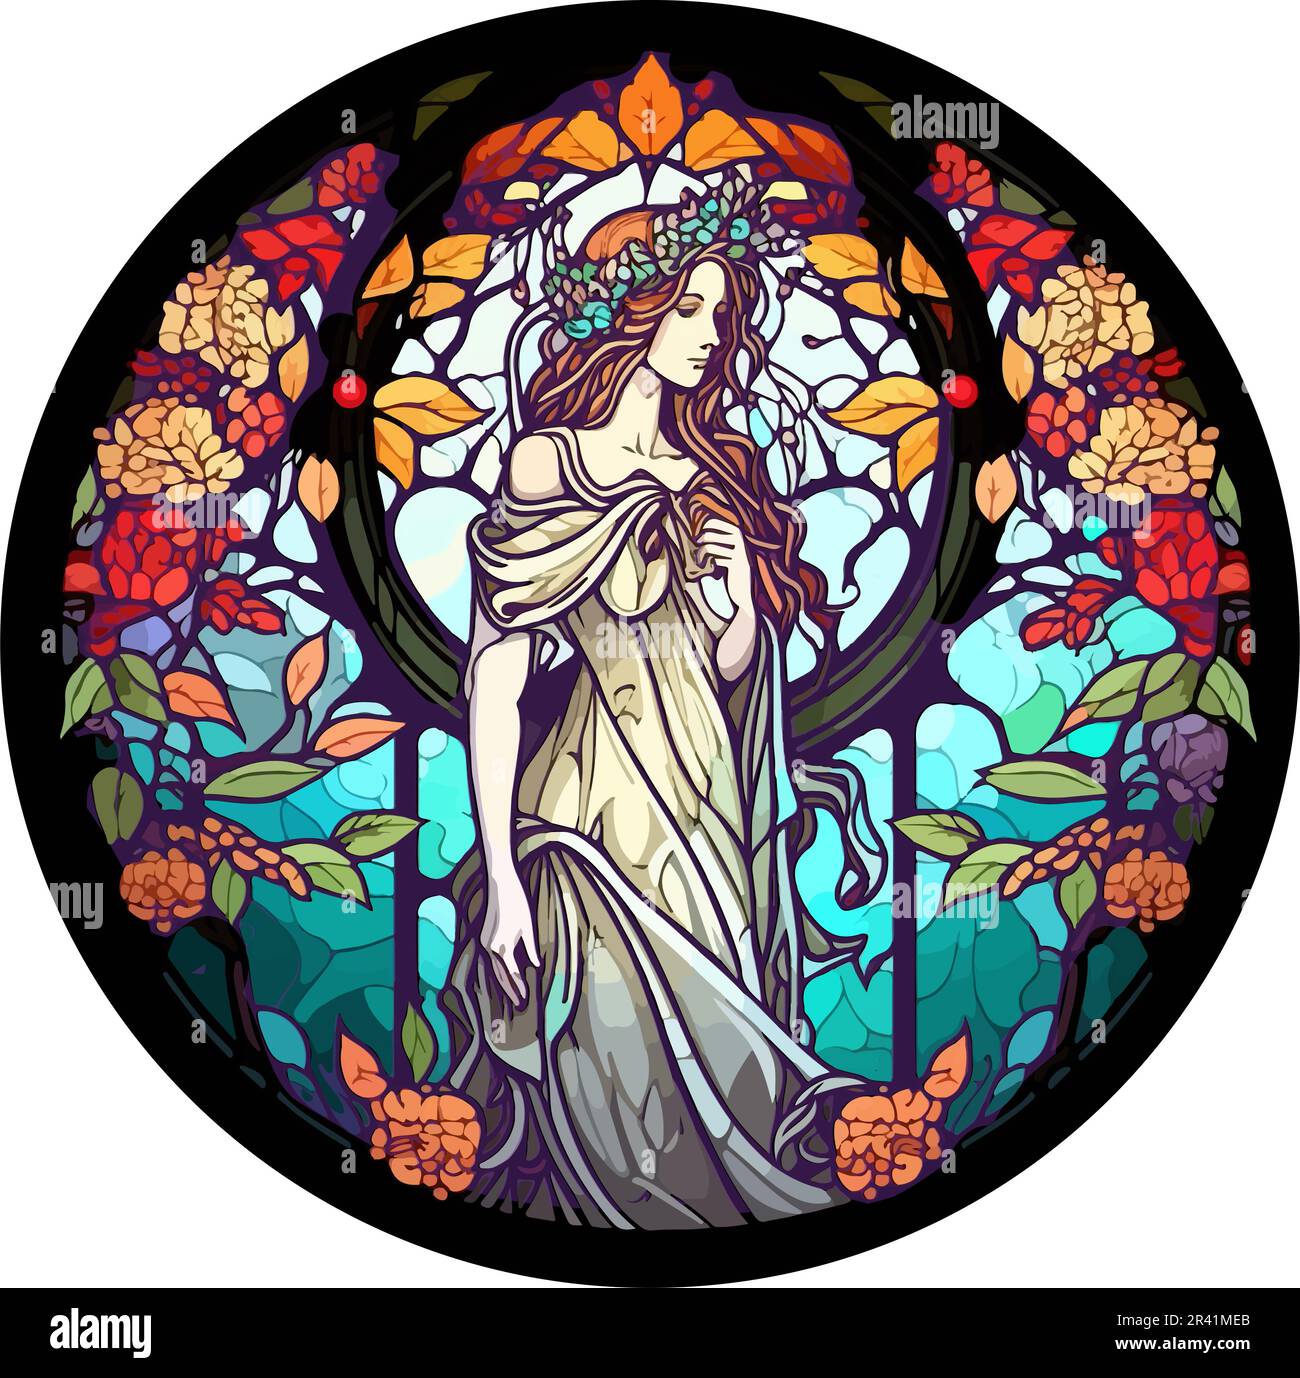 Vektor der griechischen Göttin Persephone mit Blumenmotiv und rundem Buntglasfenster Stock Vektor